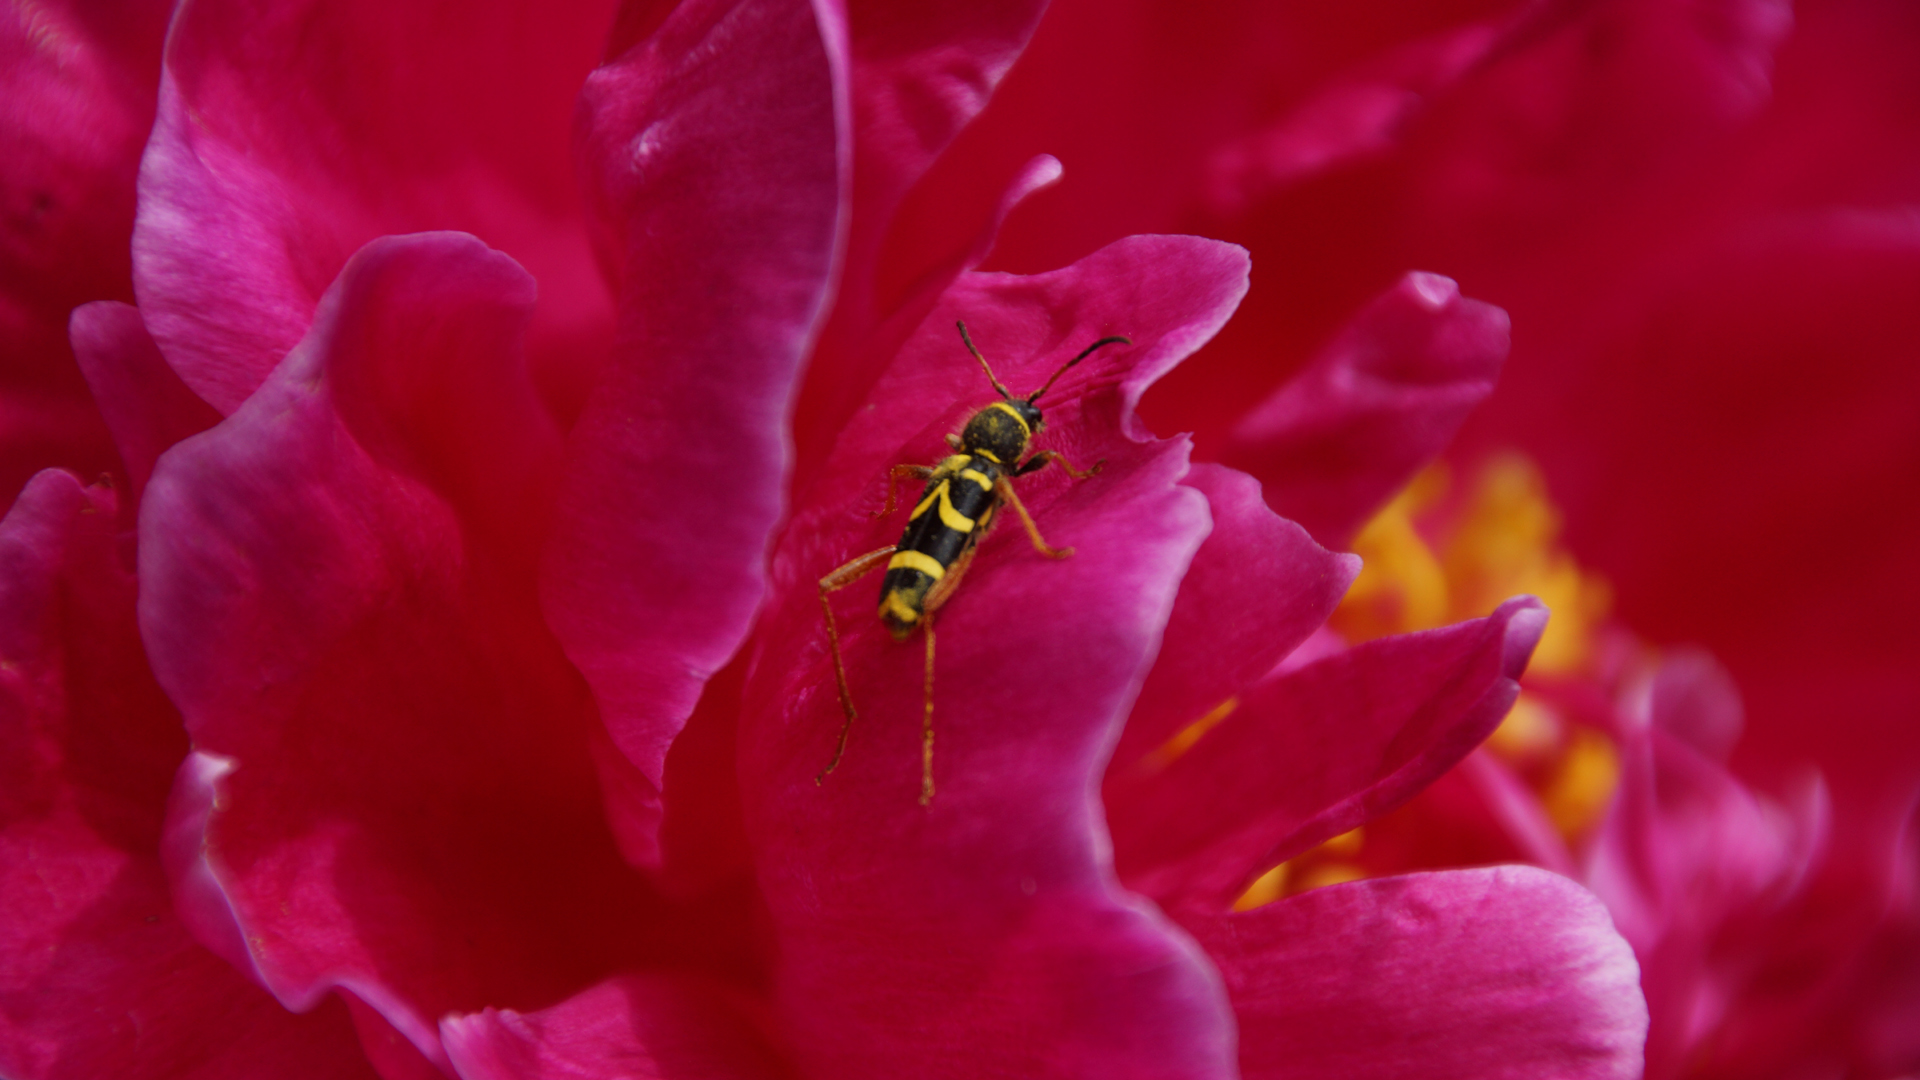 Fotostrecke Insekten: Gewöhnlicher Widderbock